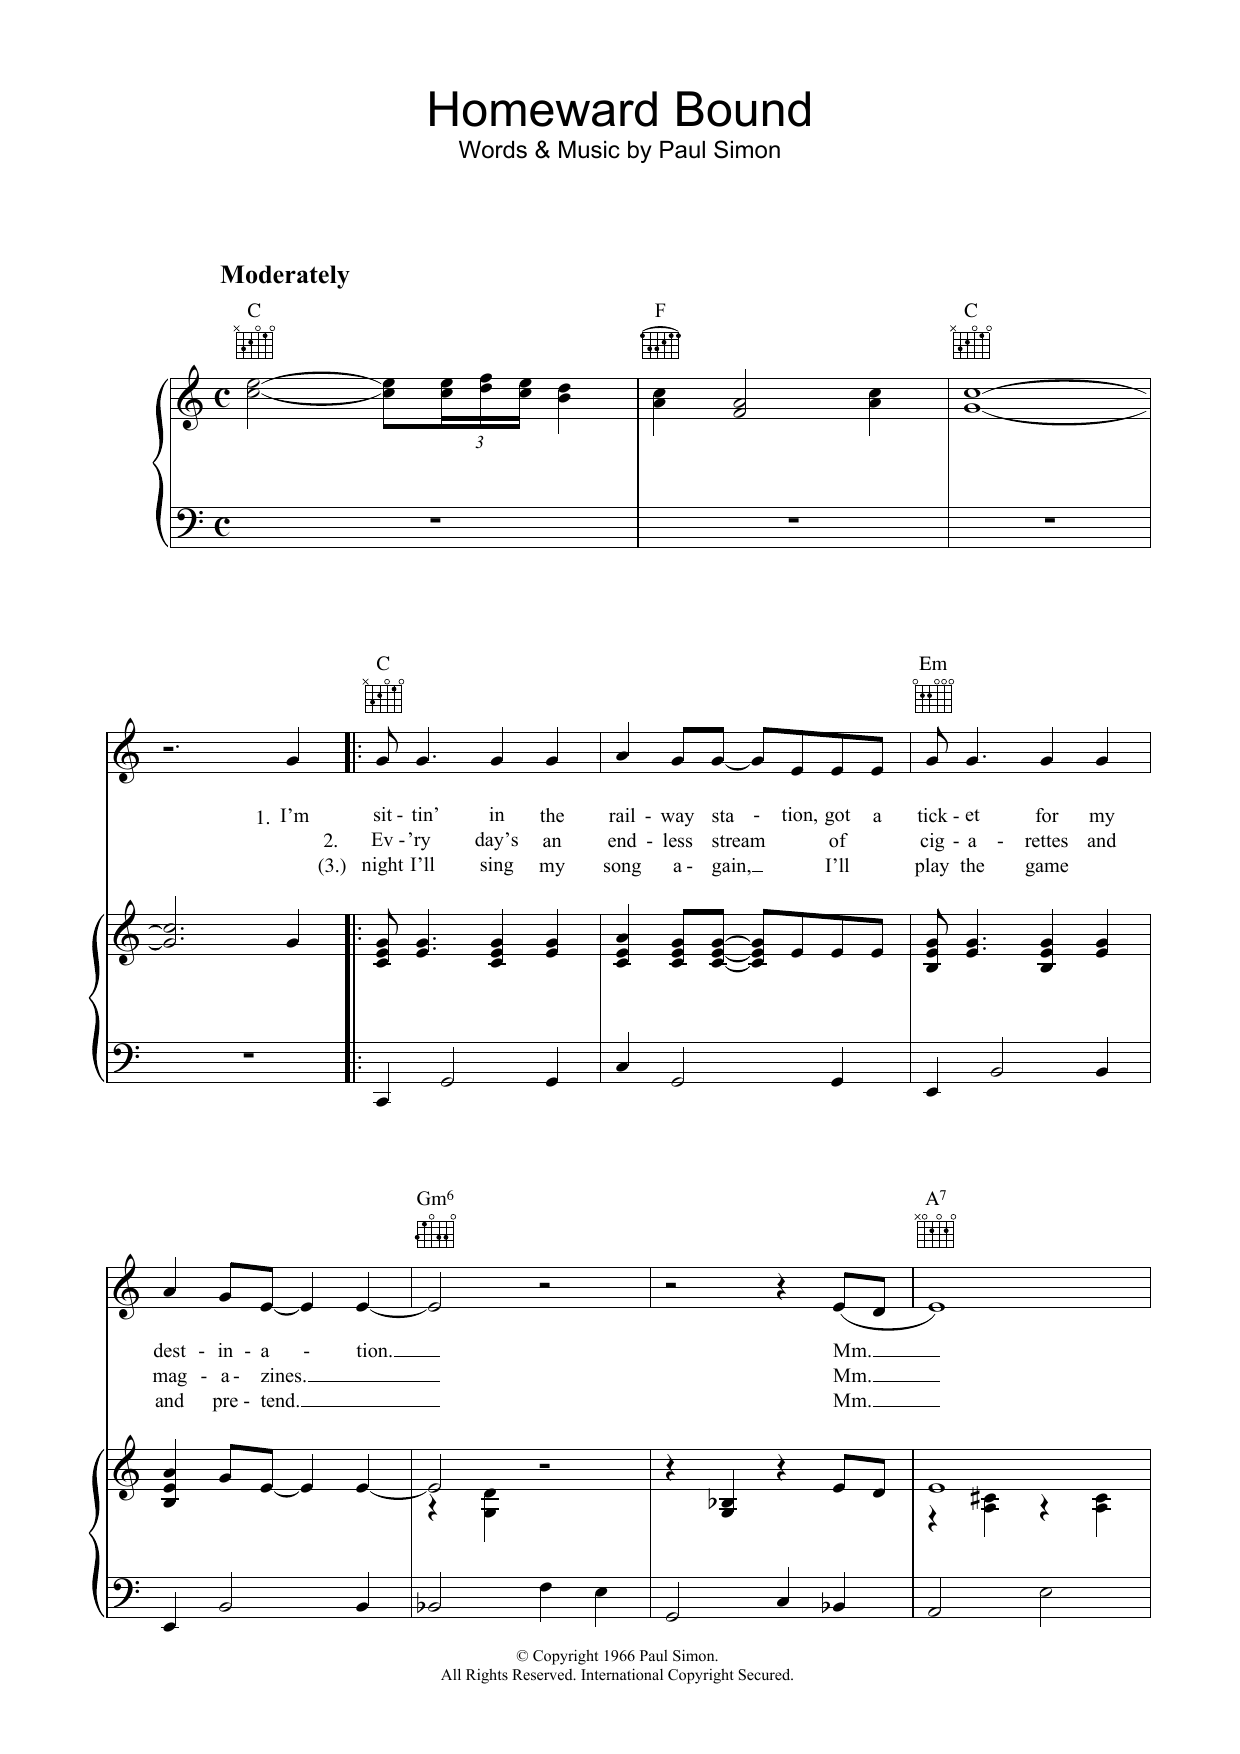 Simon & Garfunkel Homeward Bound Sheet Music Notes & Chords for Lyrics & Piano Chords - Download or Print PDF